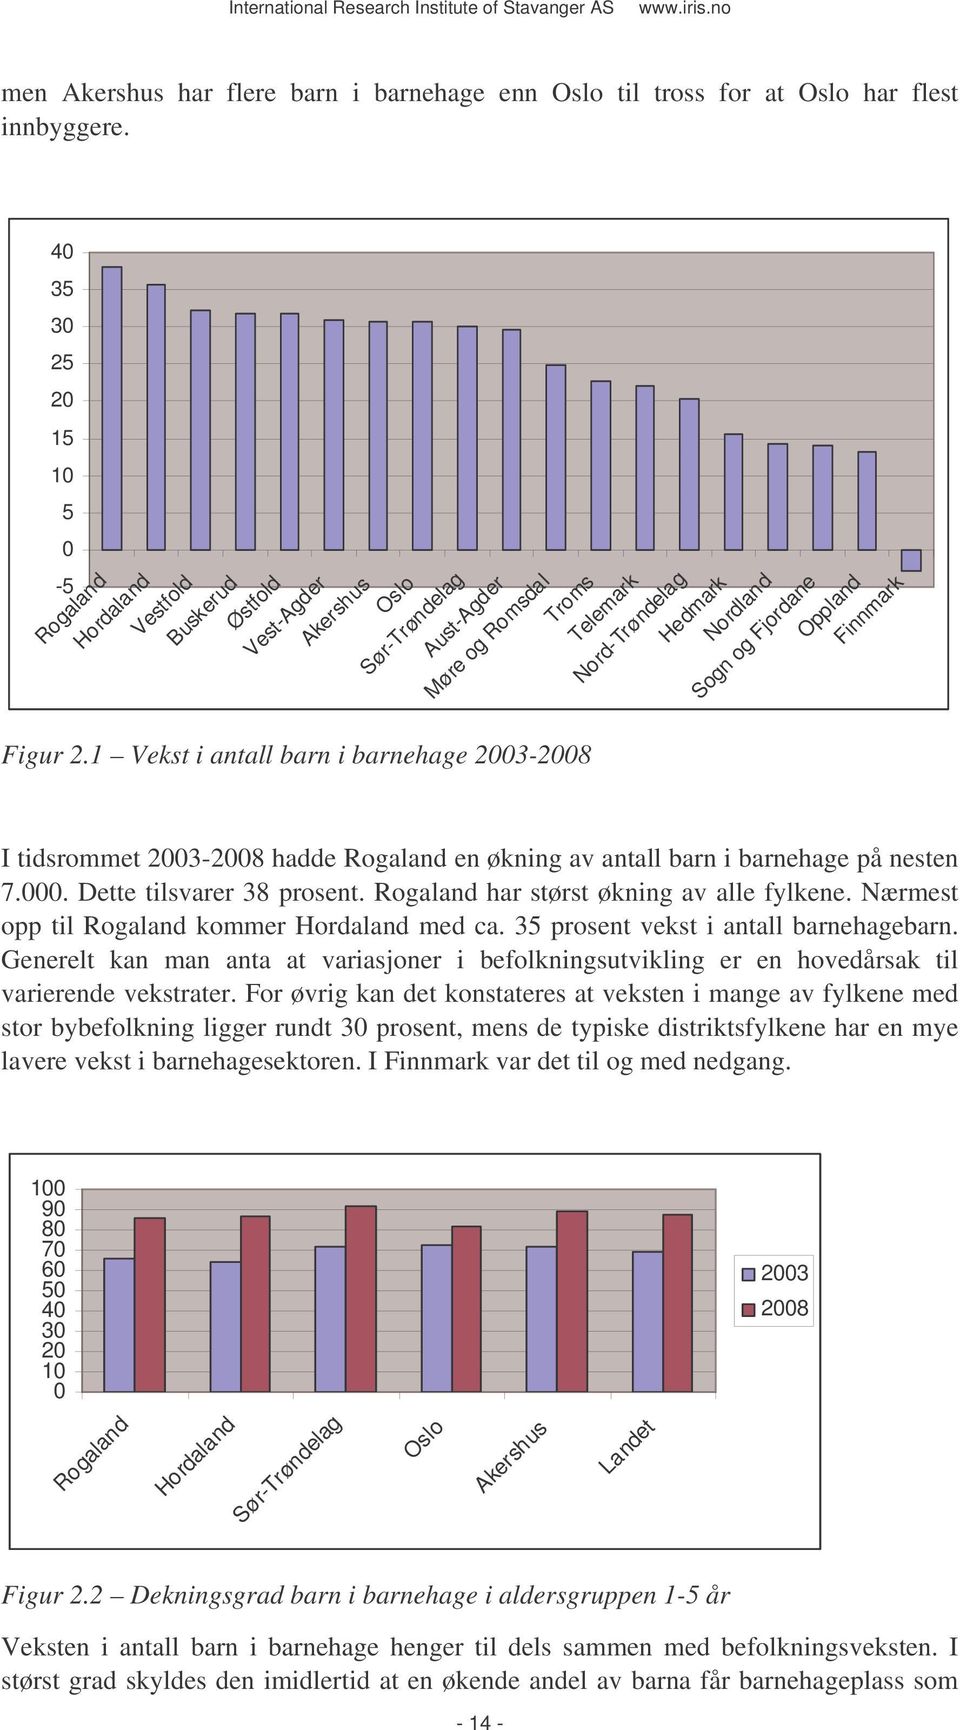 Nordland Sogn og Fjordane Oppland Finnmark I tidsrommet 2003-2008 hadde Rogaland en økning av antall barn i barnehage på nesten 7.000. Dette tilsvarer 38 prosent.